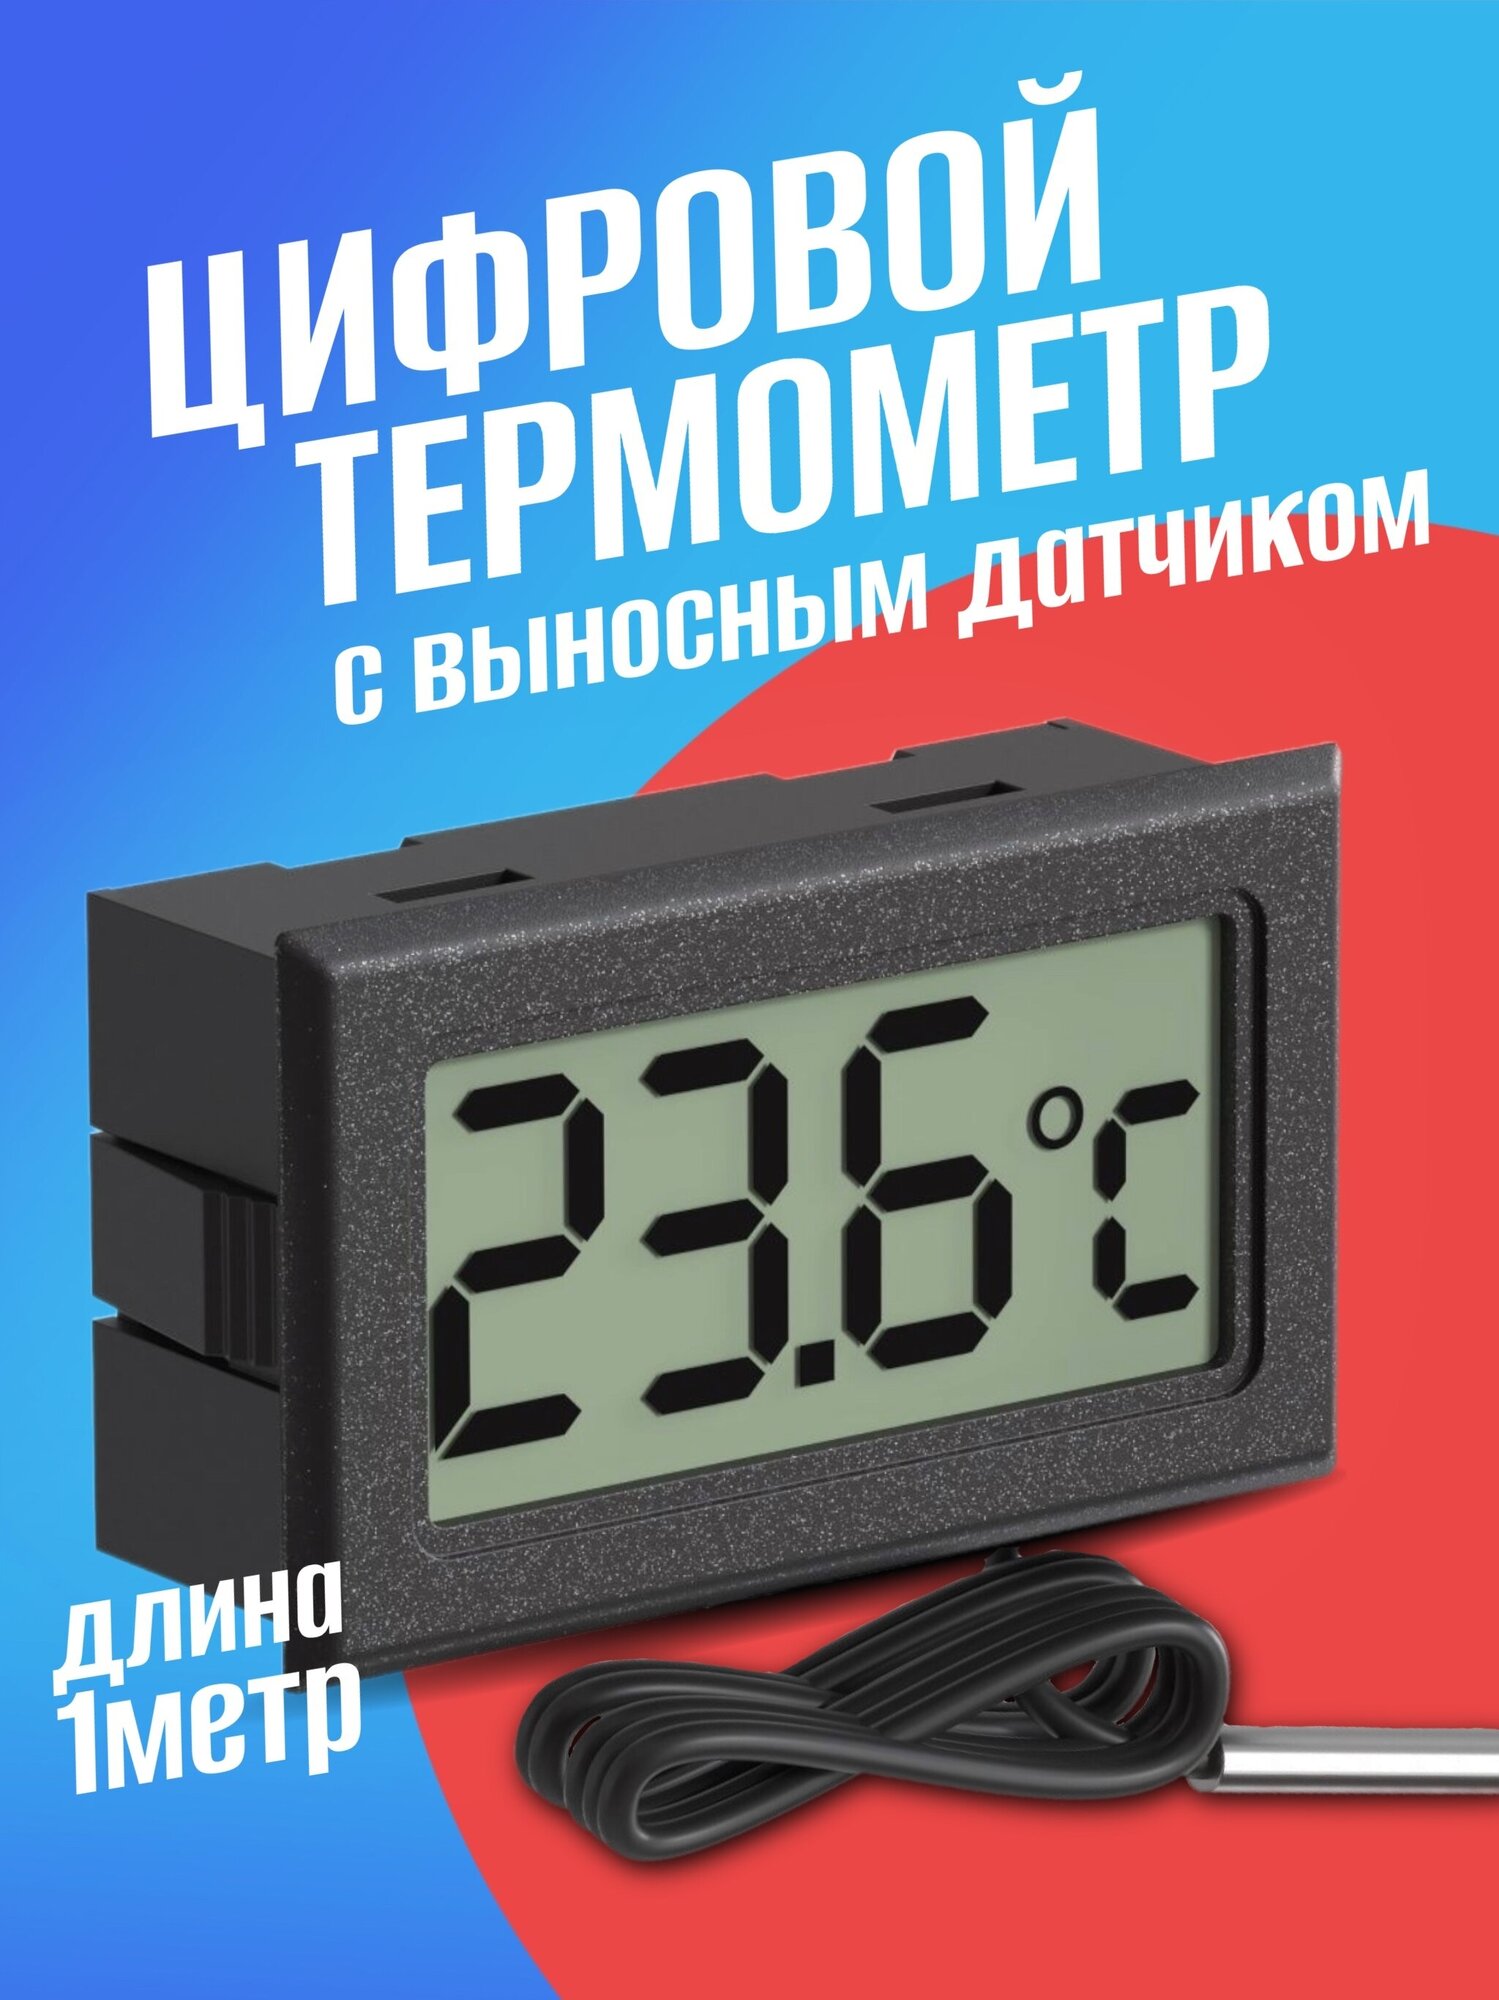 Цифровой термометр с выносным датчиком -50C до +110C 1.5м техметр TH-1 (Черный)